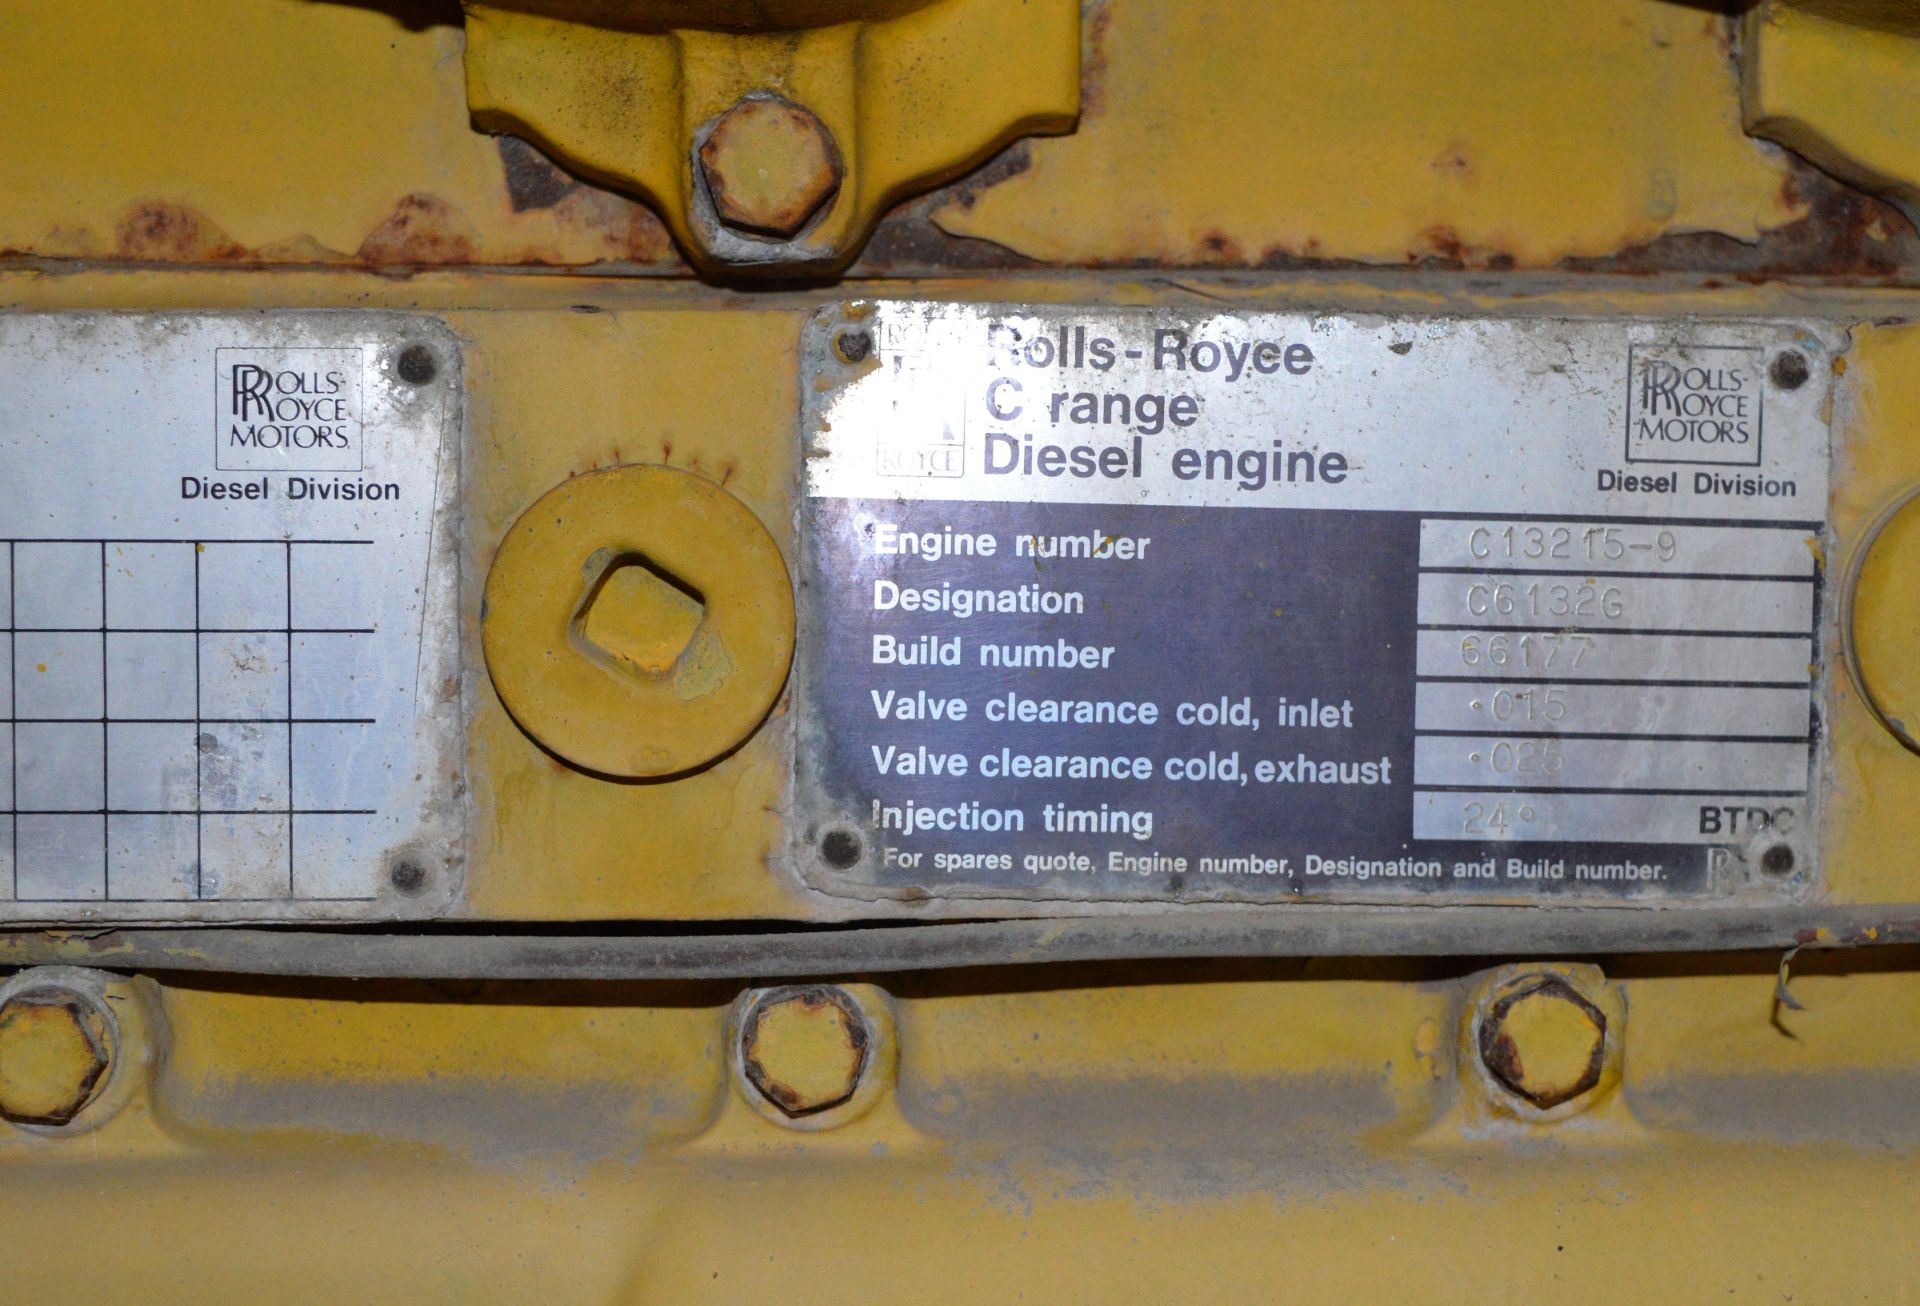 Rolls Royce Generator - diesel engine C range - Engine number C13215 - serial C61326 - bui - Image 11 of 16